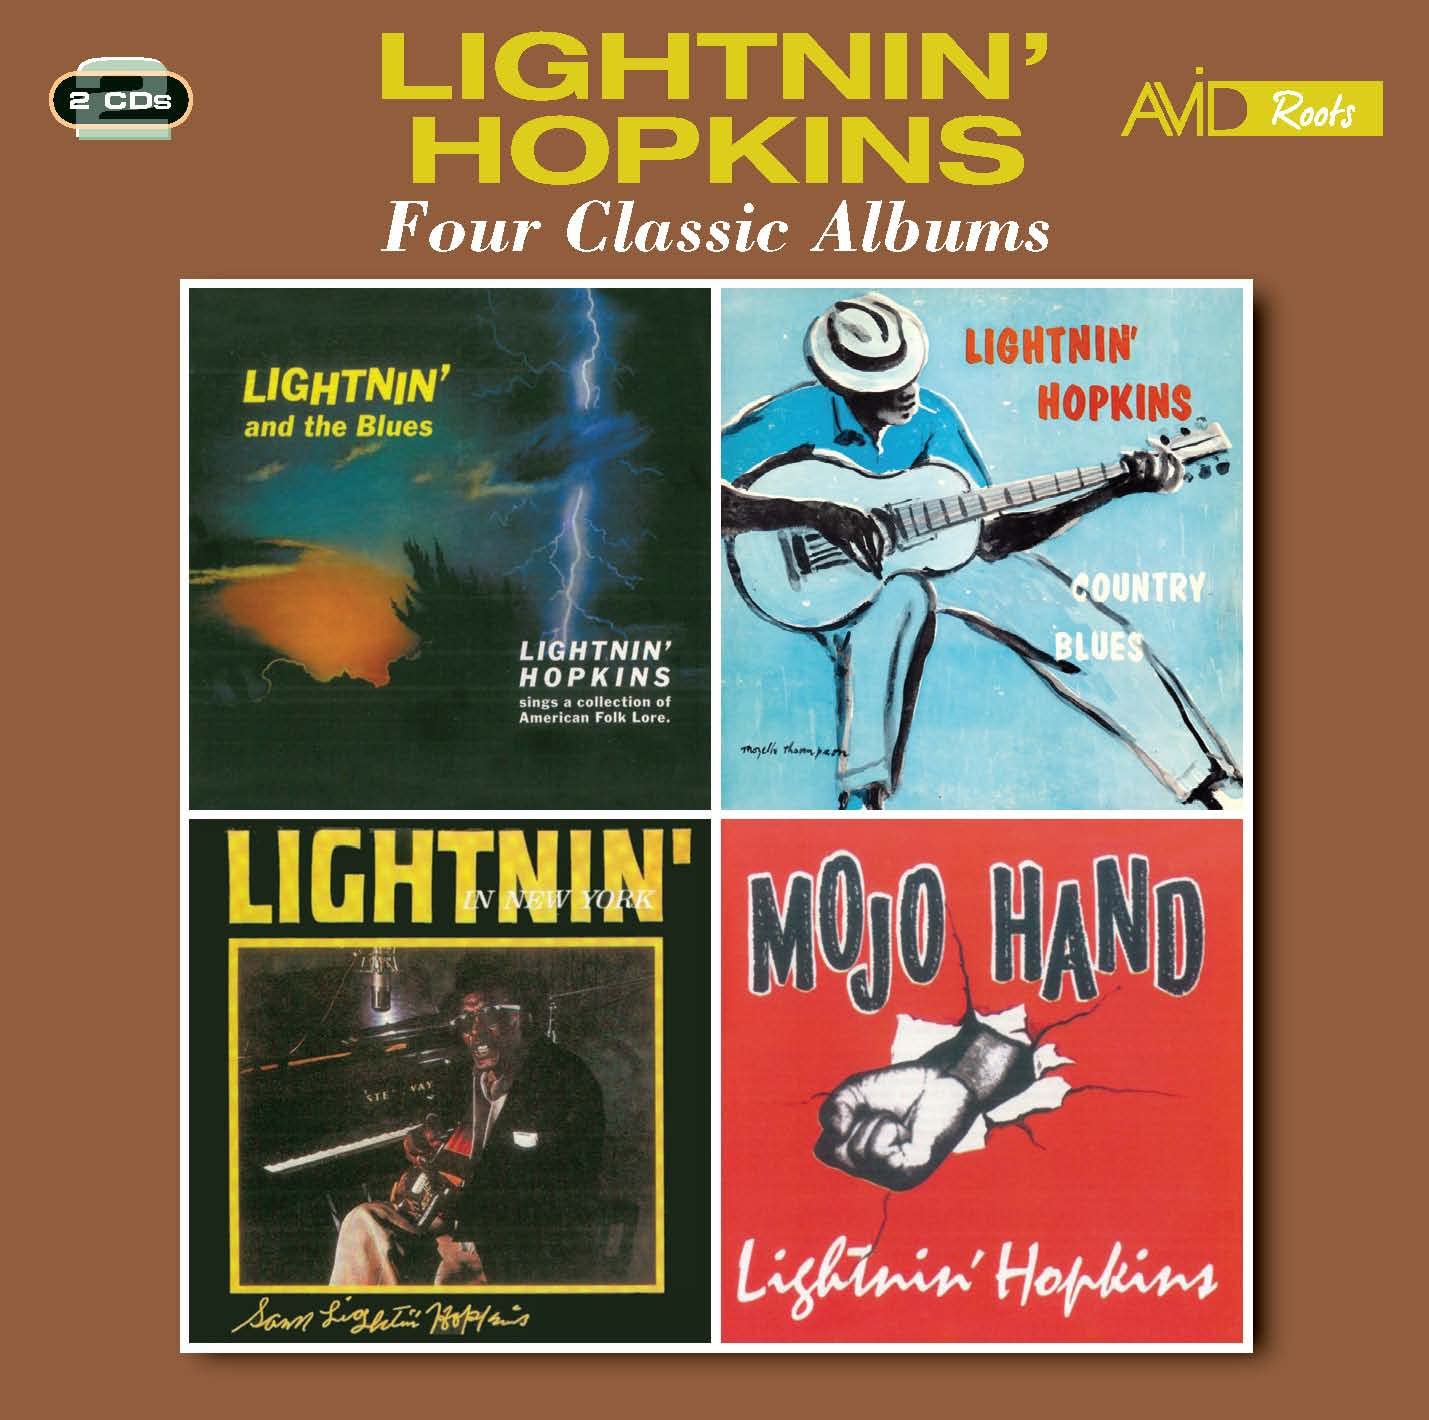 Lightnin' Hopkins - Four Classic Albums - 2CD